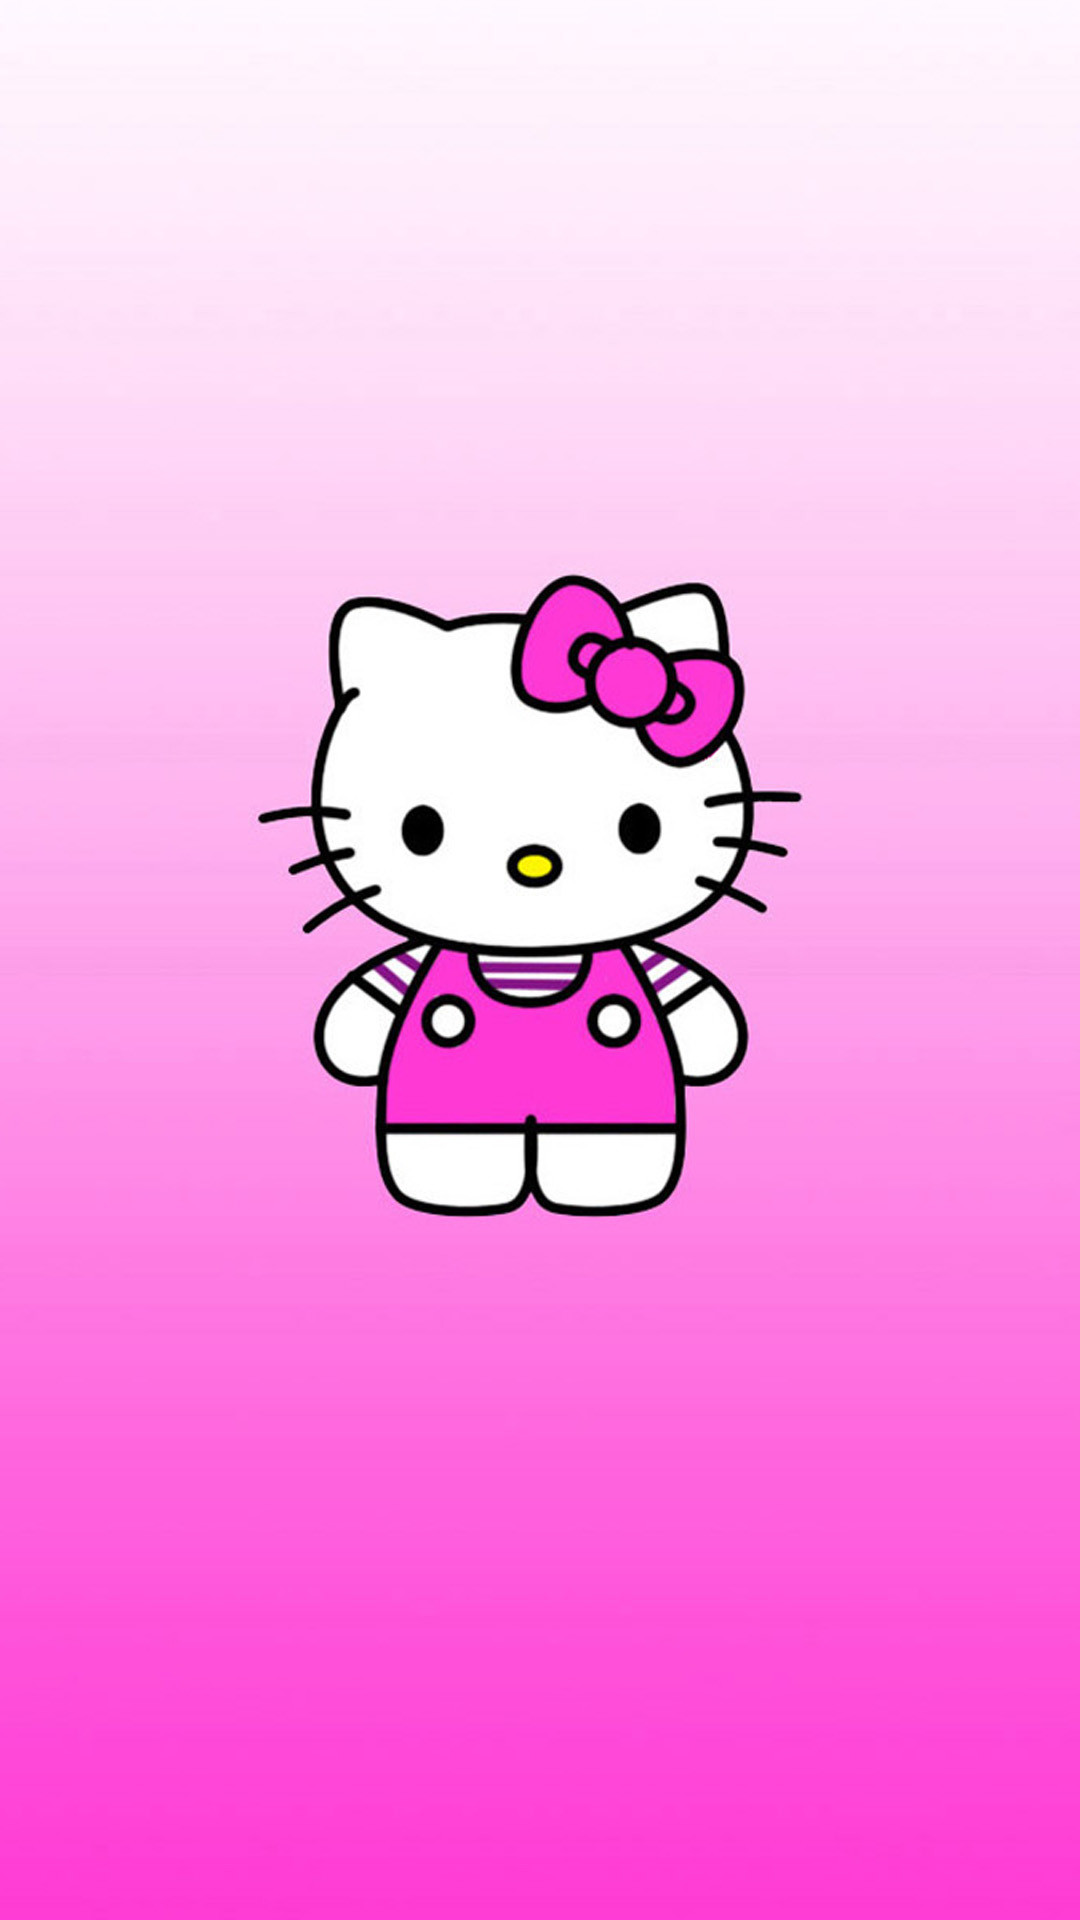 bonjour kitty fond d'écran gratuit,rose,dessin animé,violet,police de caractère,illustration